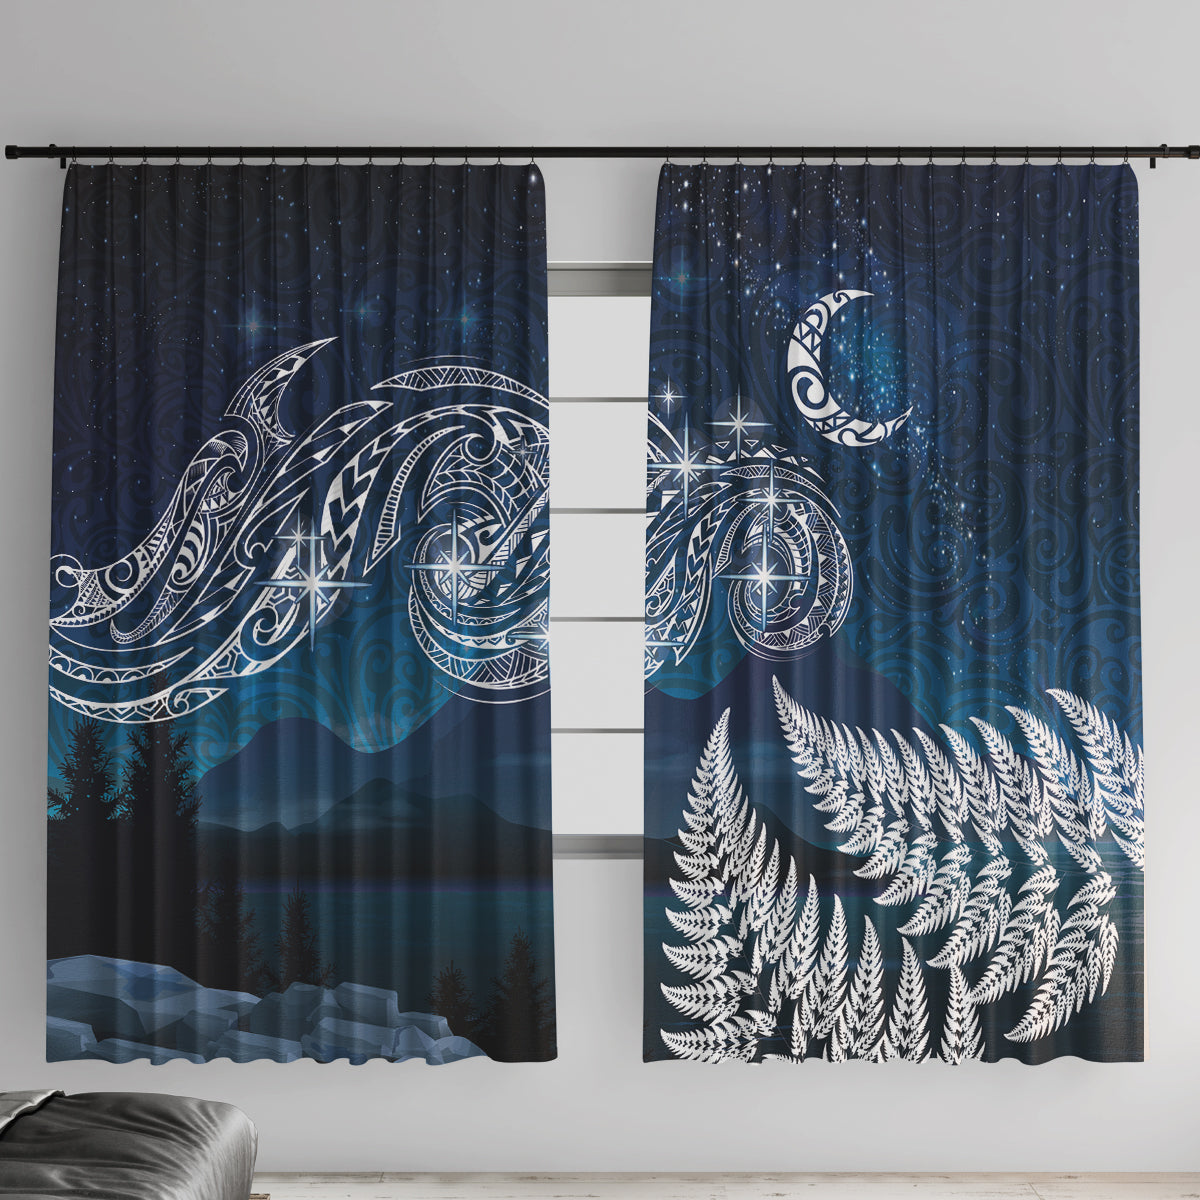 New Zealand Matariki Window Curtain Starry Night Style